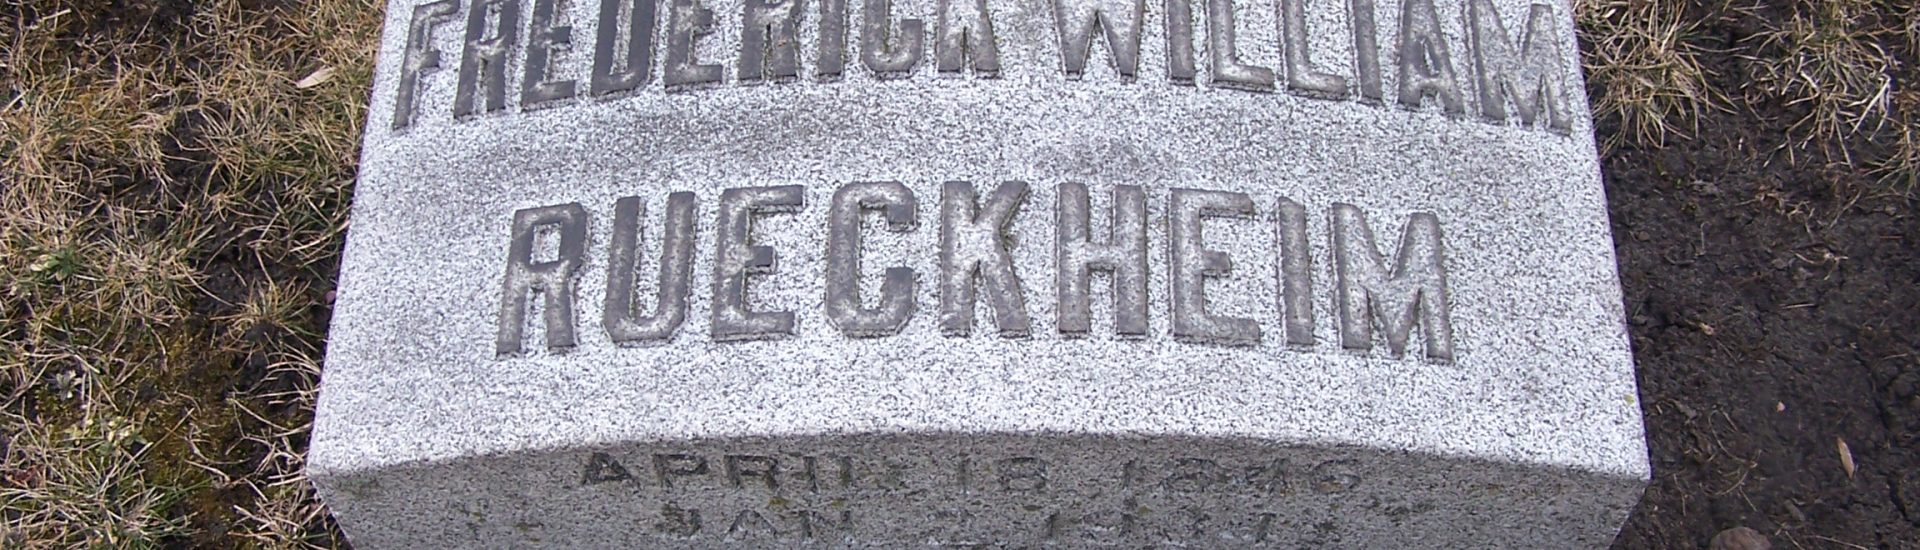 Frederick William Rueckheim